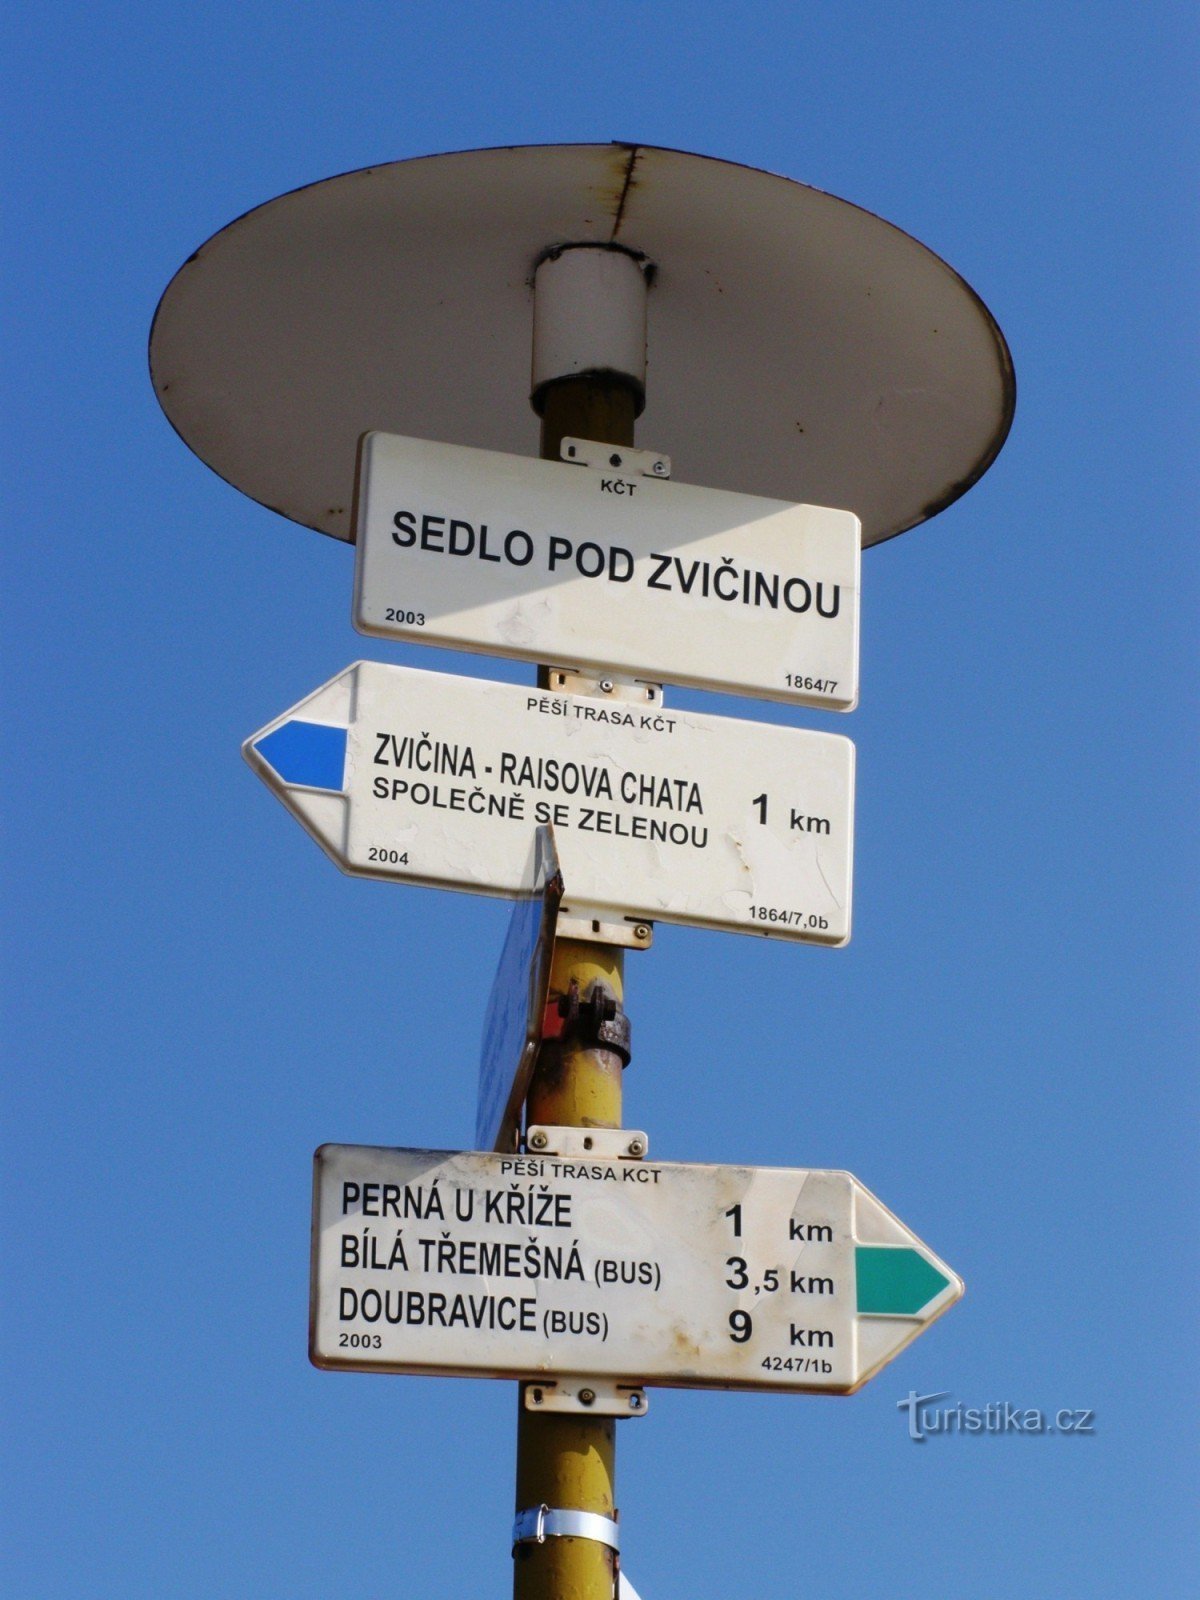 răscruce turistică Sedlo pod Zvičinou